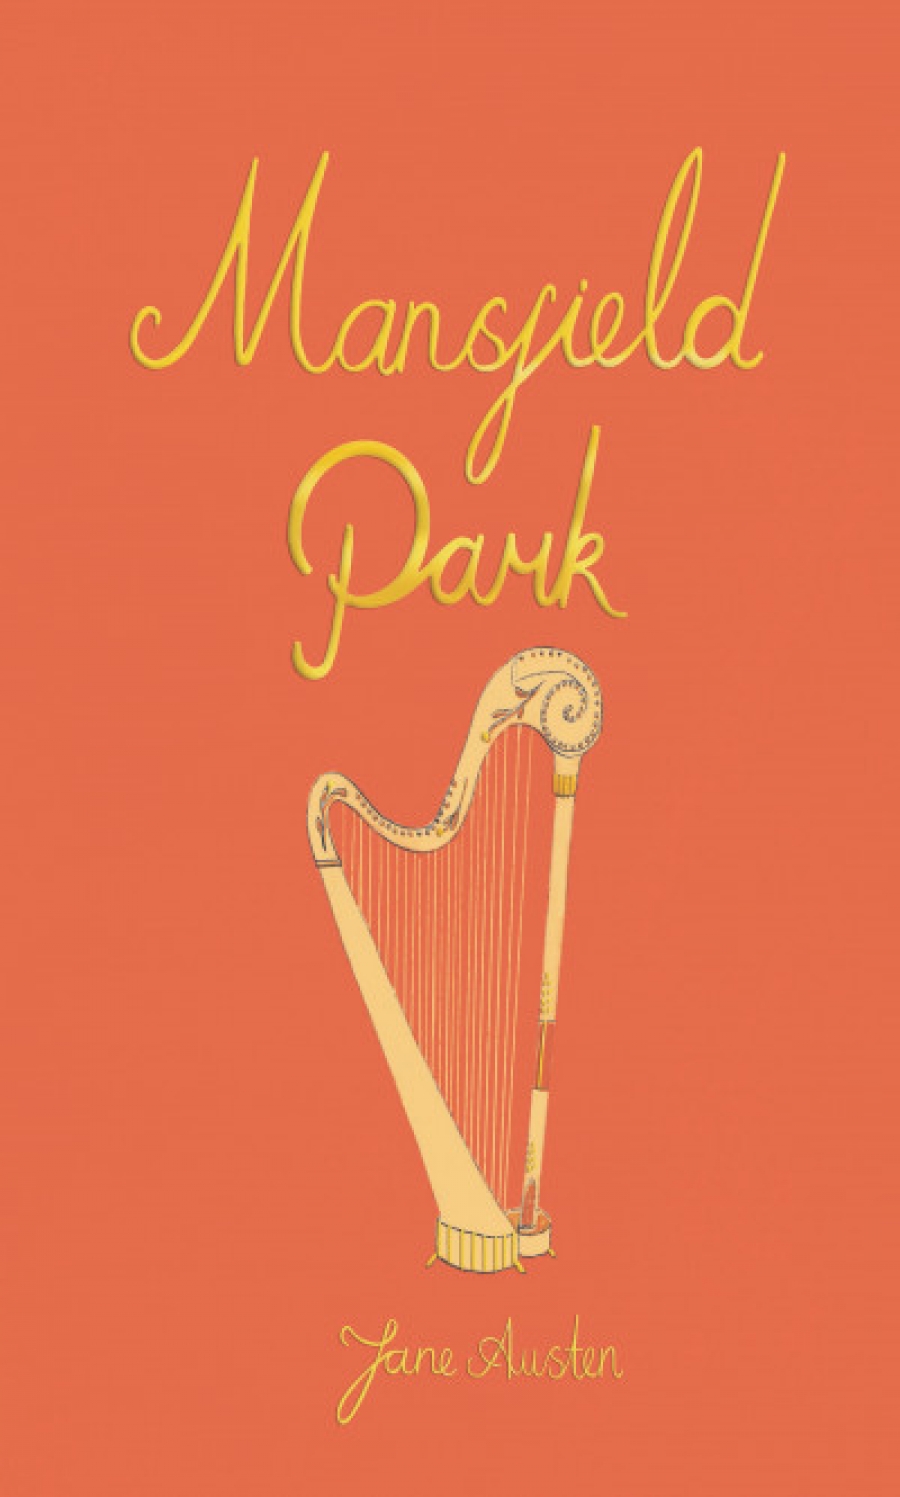 Austen J. Mansfield Park 